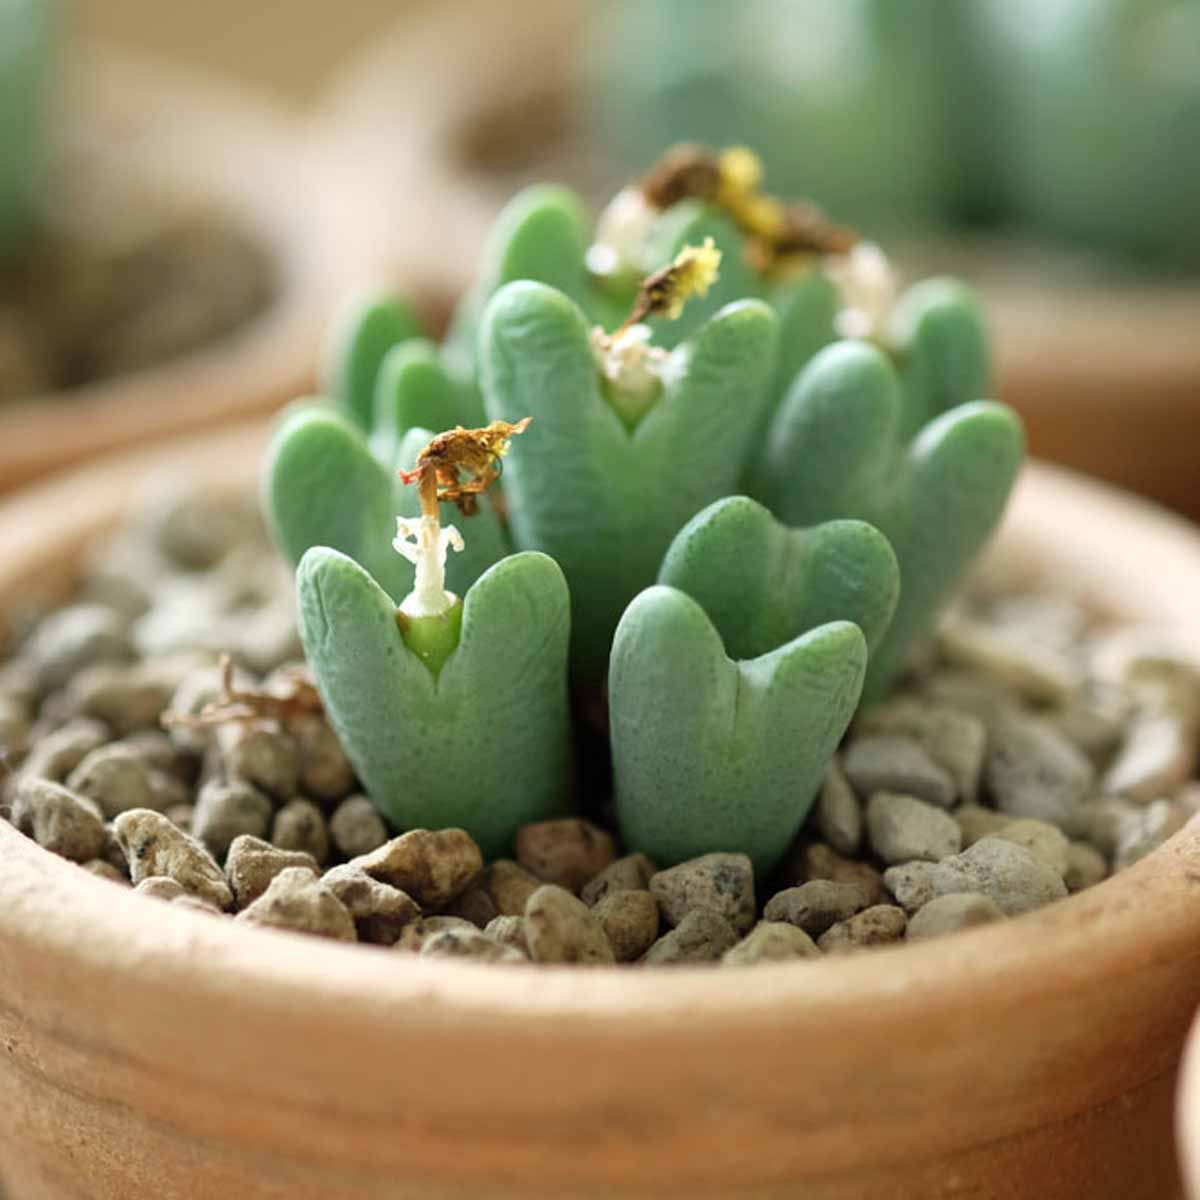 Le mini piante grasse: una soluzione senza problemi